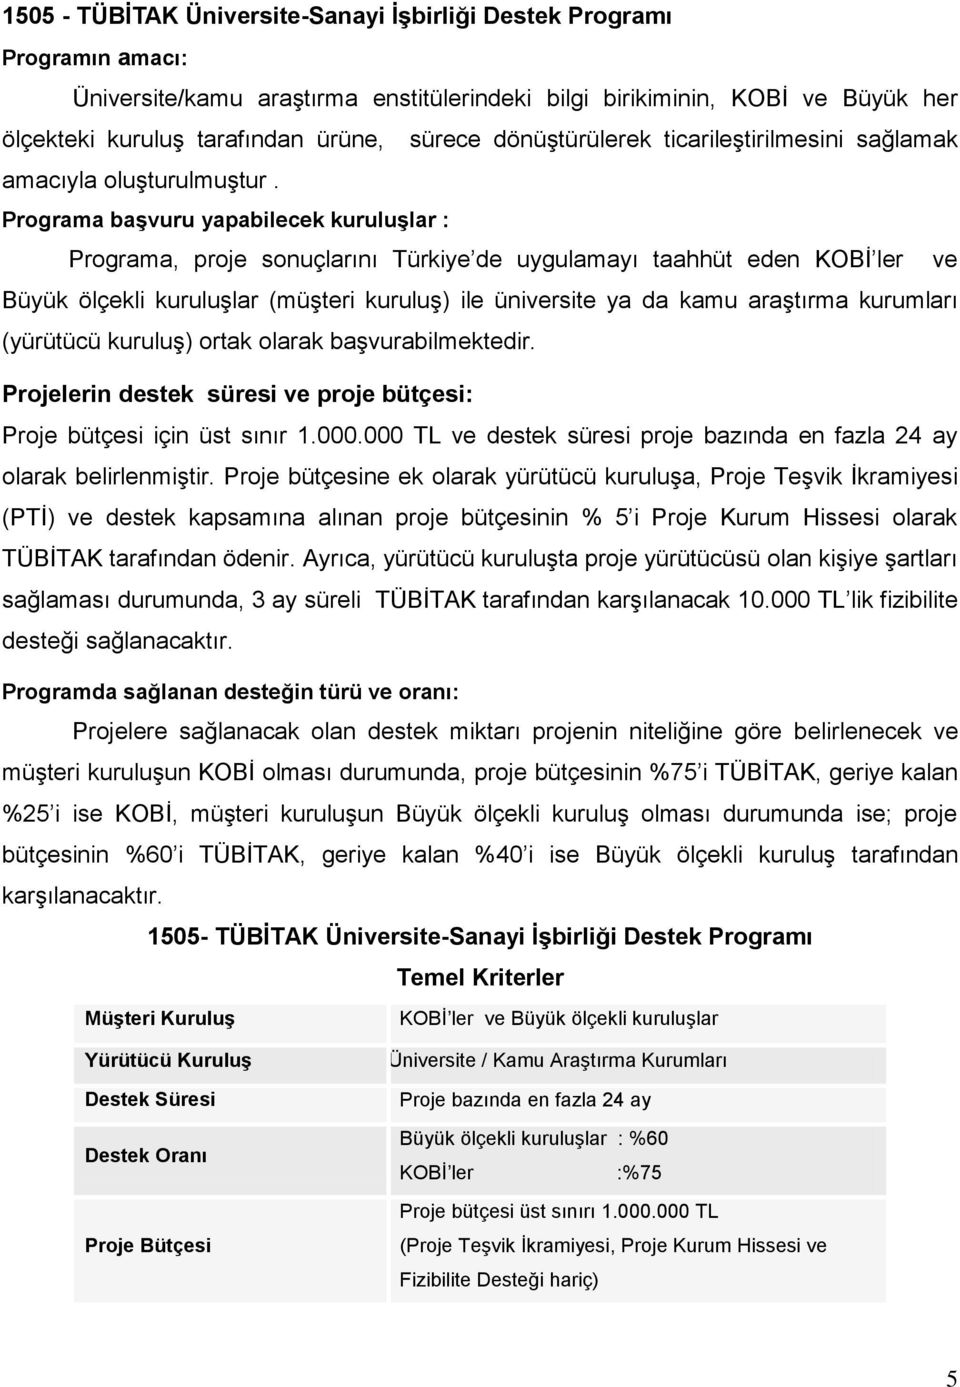 Programa başvuru yapabilecek kuruluşlar : Programa, proje sonuçlarını Türkiye de uygulamayı taahhüt eden KOBİ ler ve Büyük ölçekli kuruluşlar (müşteri kuruluş) ile üniversite ya da kamu araştırma